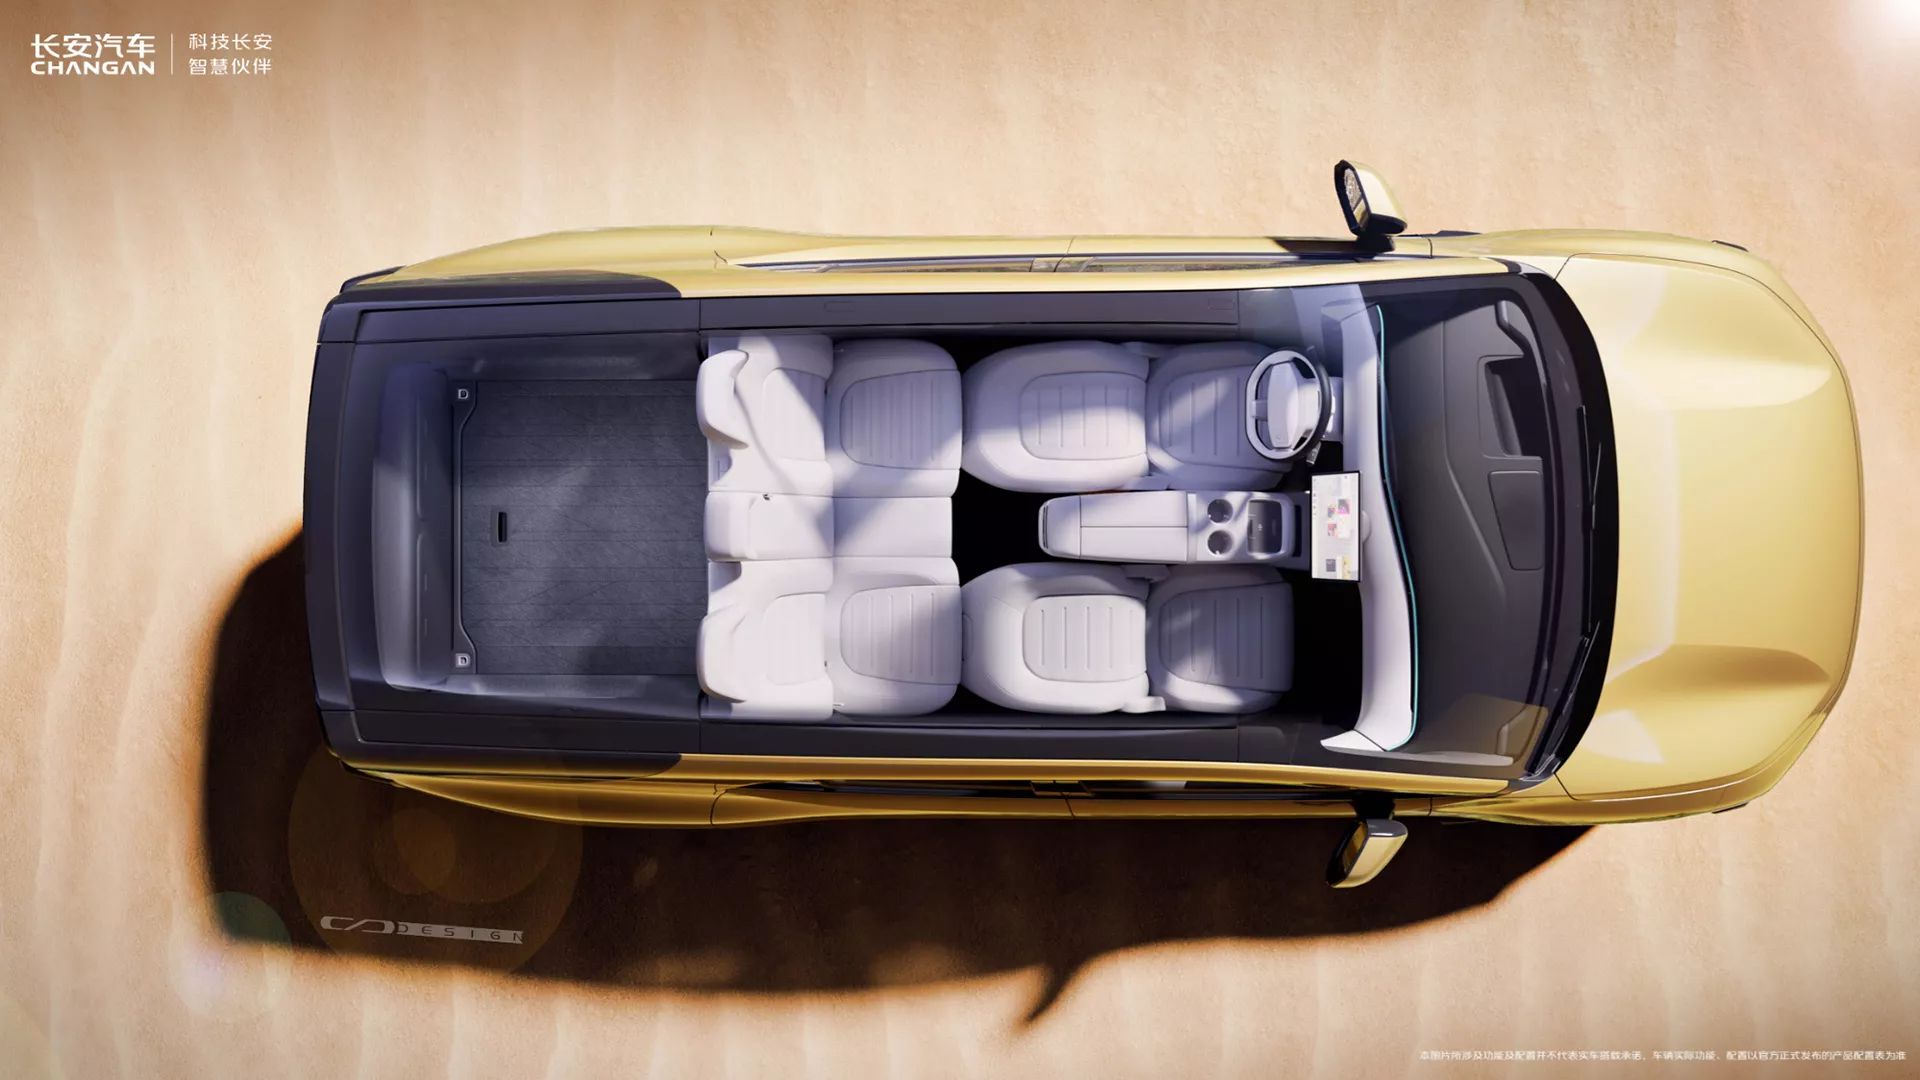 شانجان تكشف عن سيارة فريدة يمكن تحويلها من SUV إلى شاحنة بيك أب بضغطة زر 15